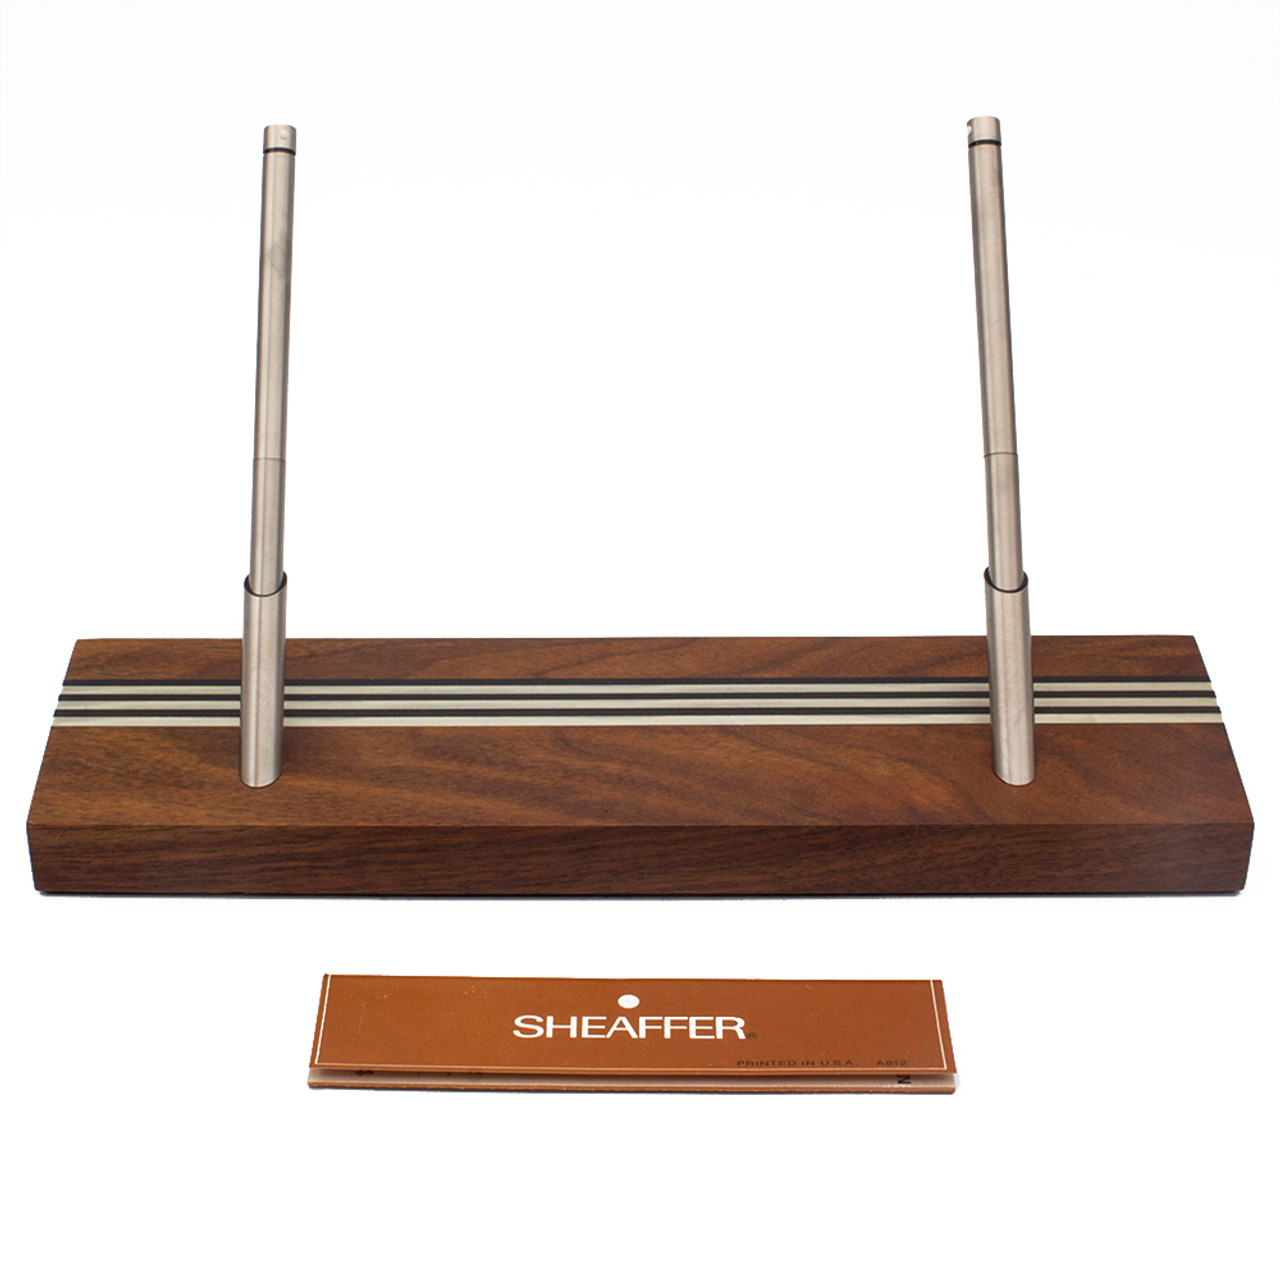 Sheaffer CW22 Two-Pen Wood Desk Set - Walnut Base w Steel Stripe Inlay, Slim Targa Ballpoints (New Old Stock In Box)